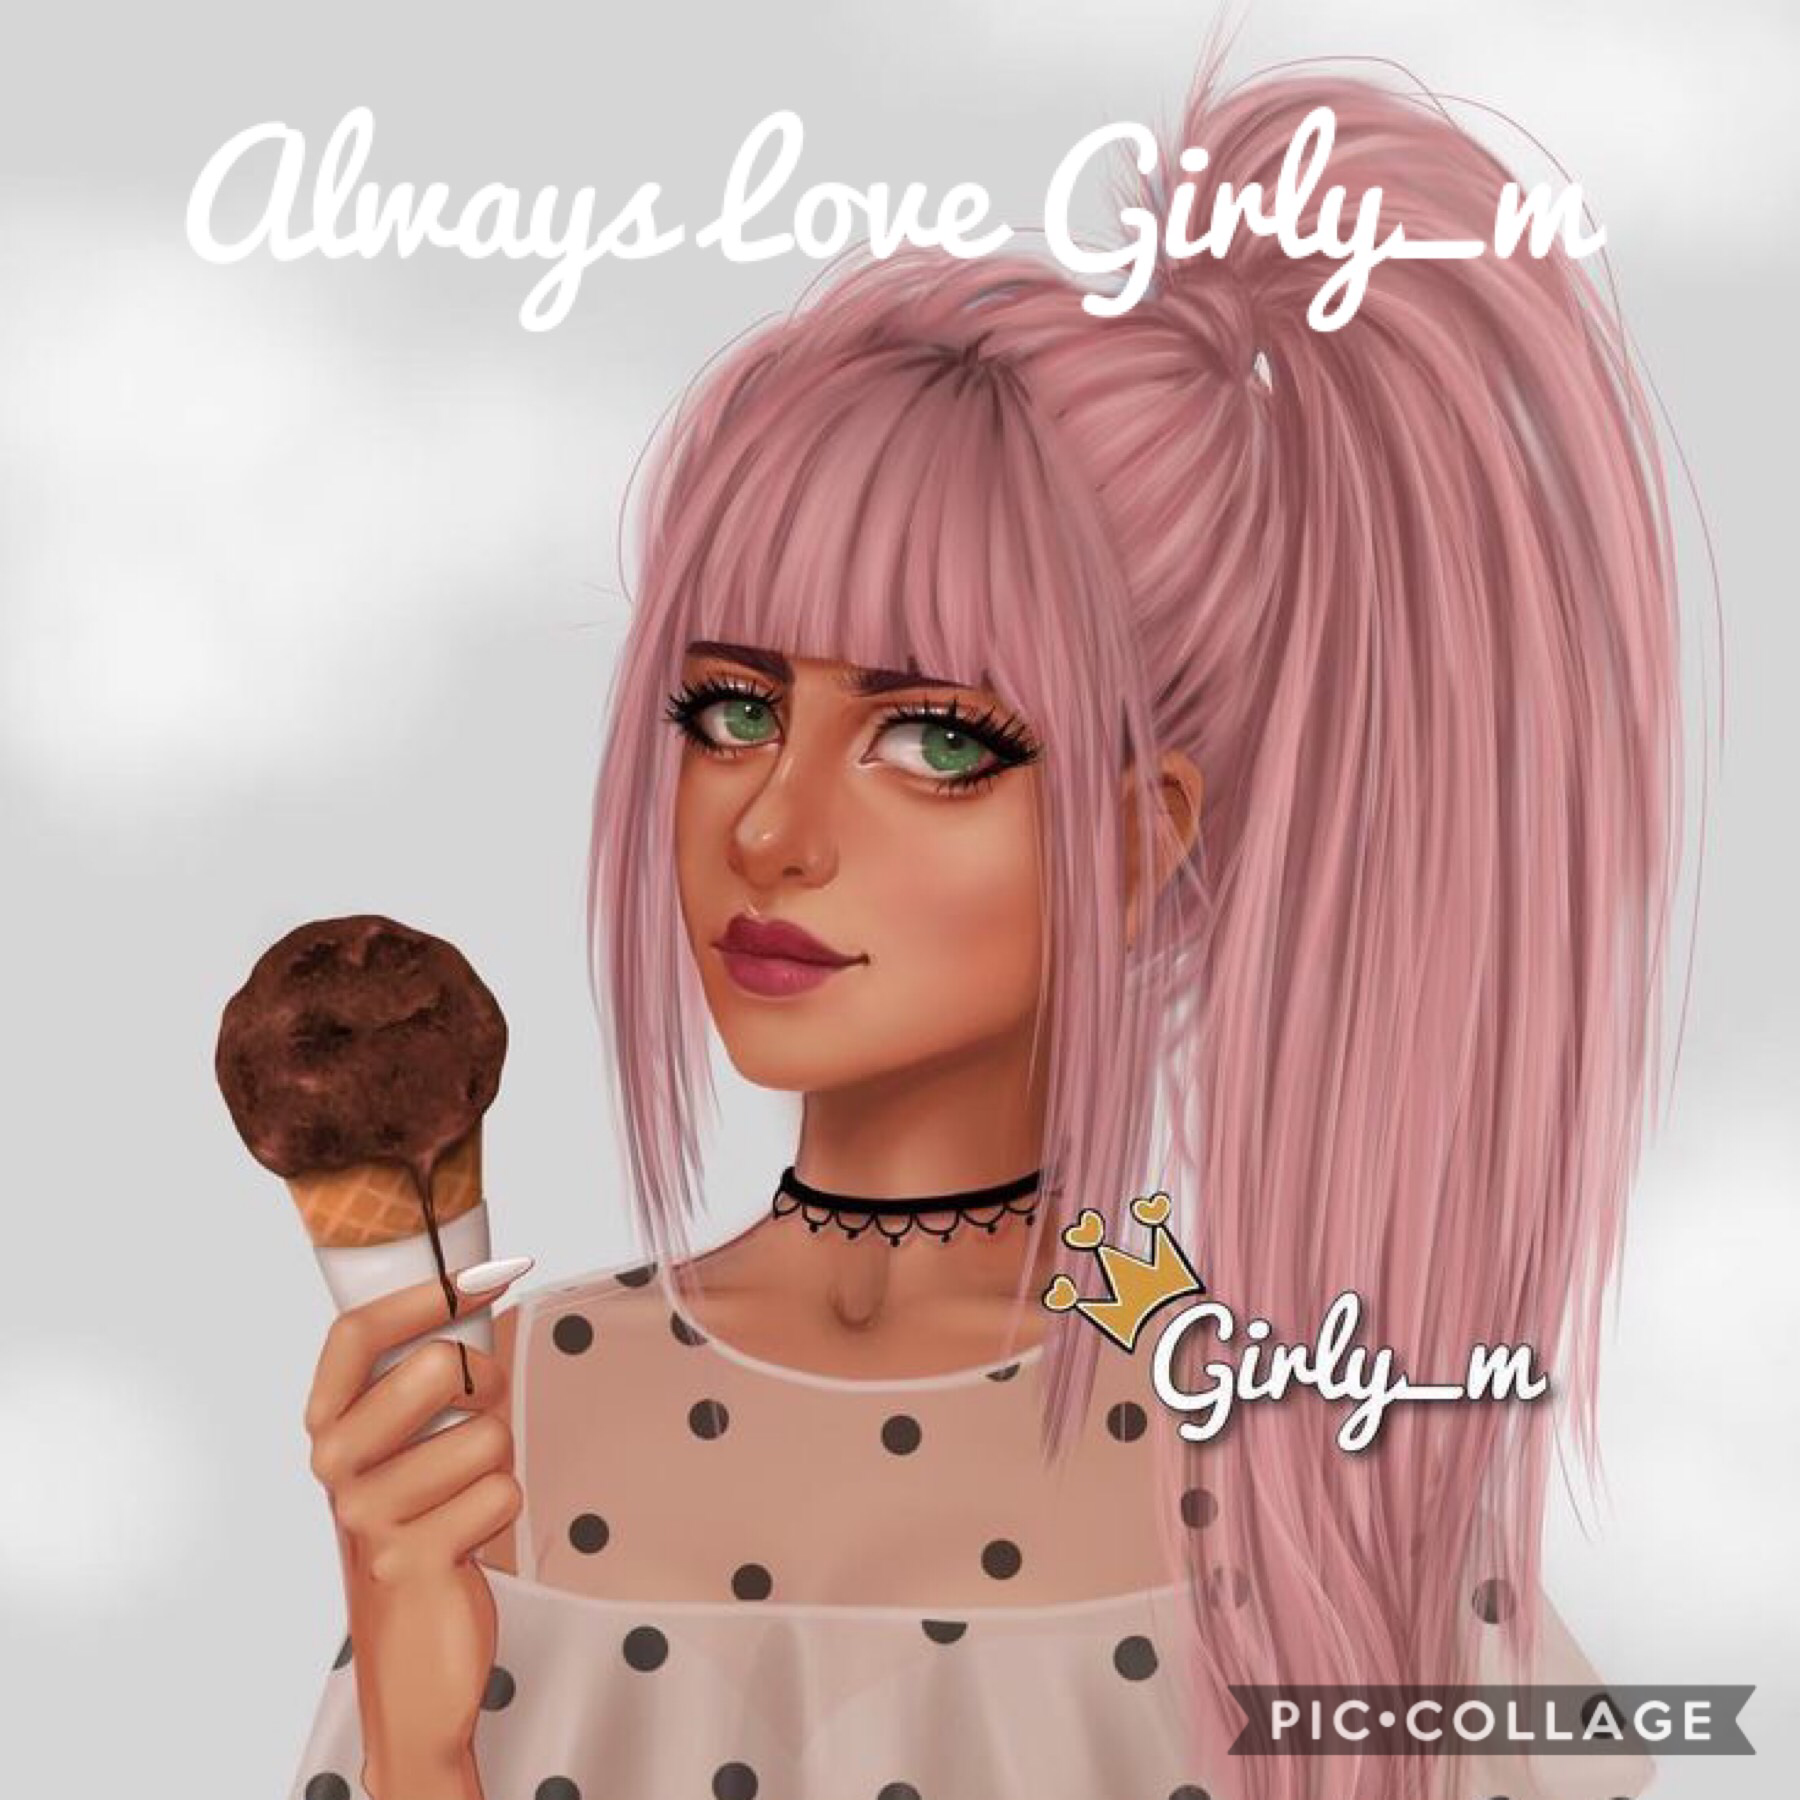 Girls Plz Love Girly_m